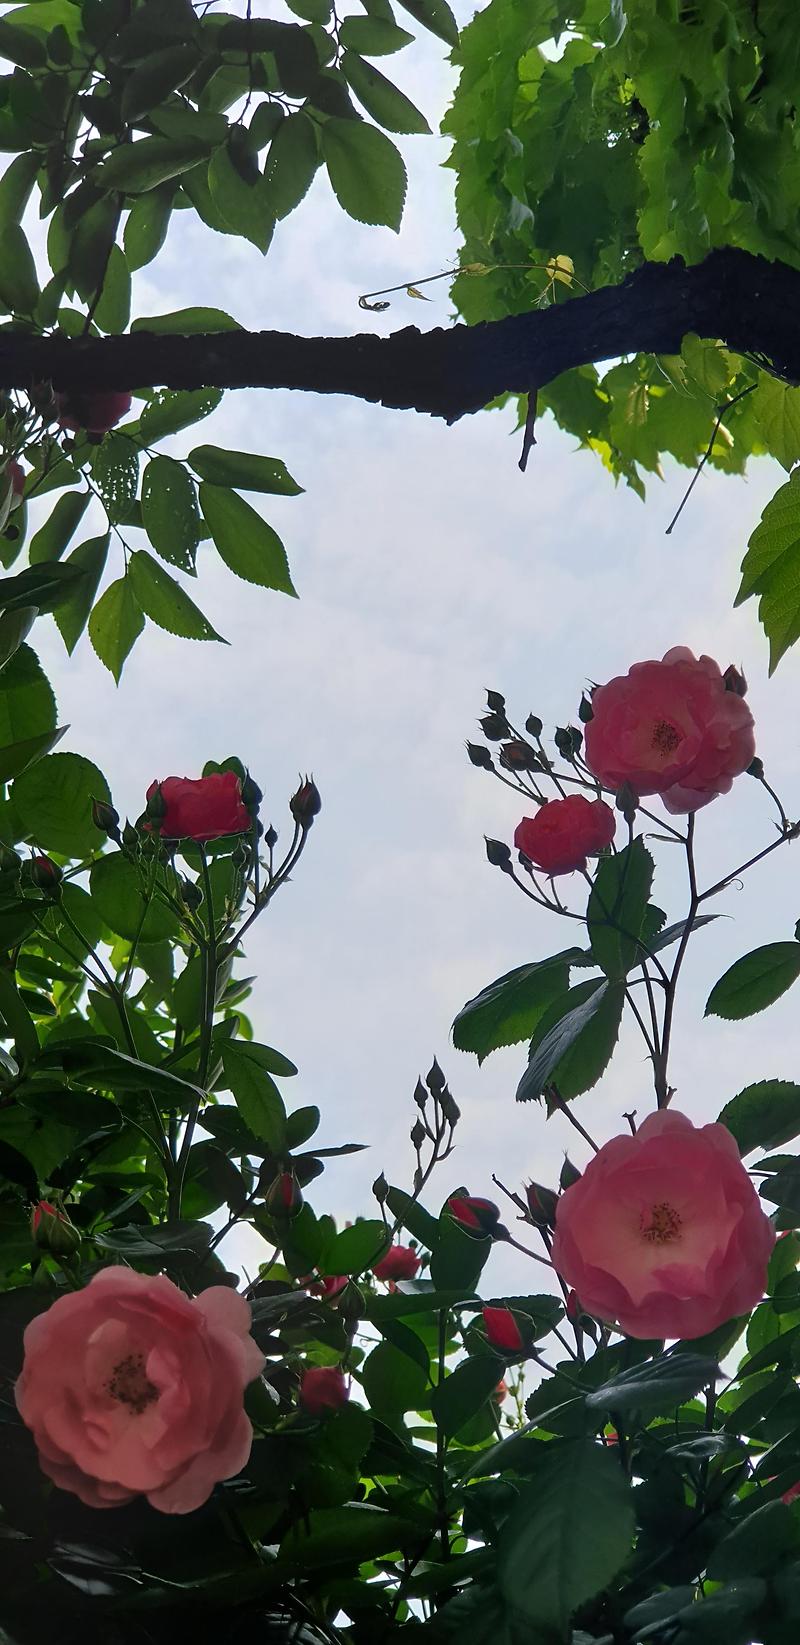 [꽃]분홍 장미꽃 은은한 느낌이 마음에 들어 데리고 왔습니다 .